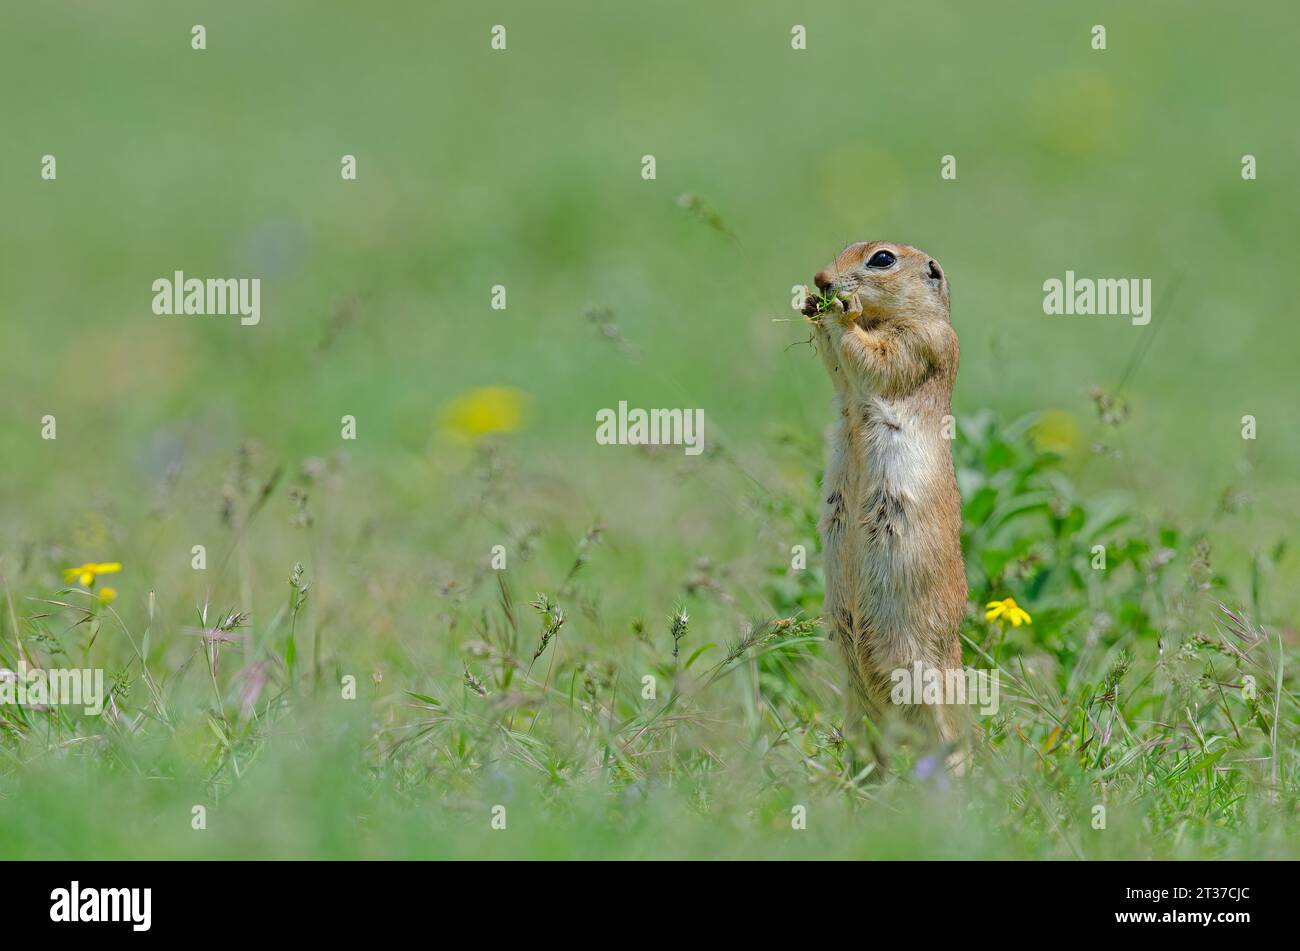 Mummy Ground squirrel is feeding. Cute funny animal ground squirrel. Green nature background. Stock Photo